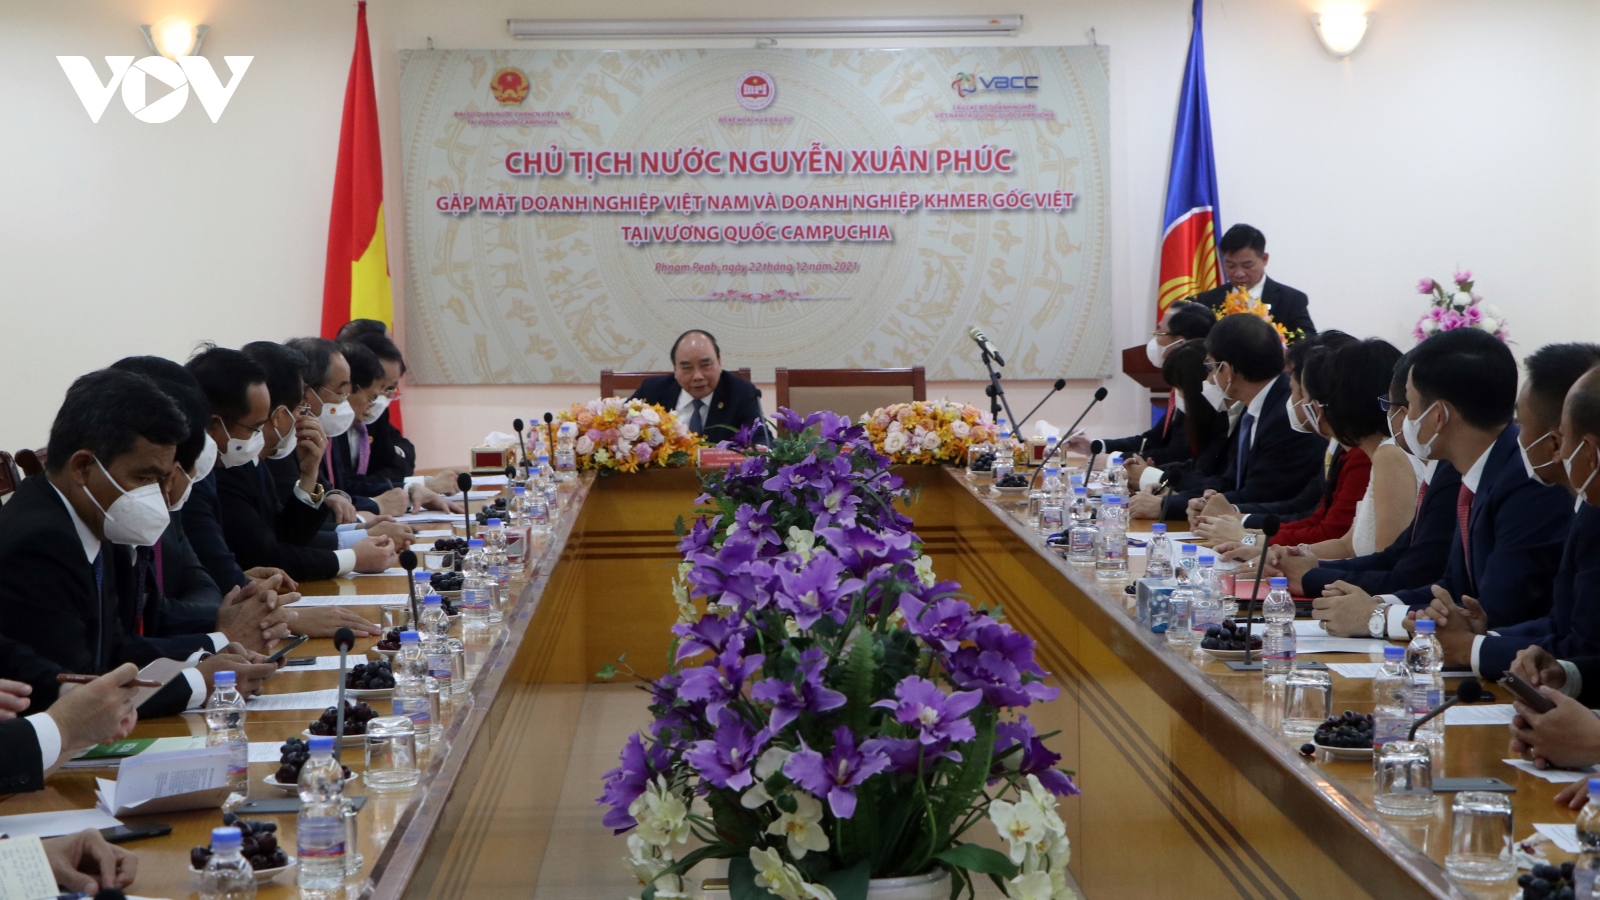 Chủ tịch nước gặp mặt các doanh nghiệp Việt Nam tại Campuchia